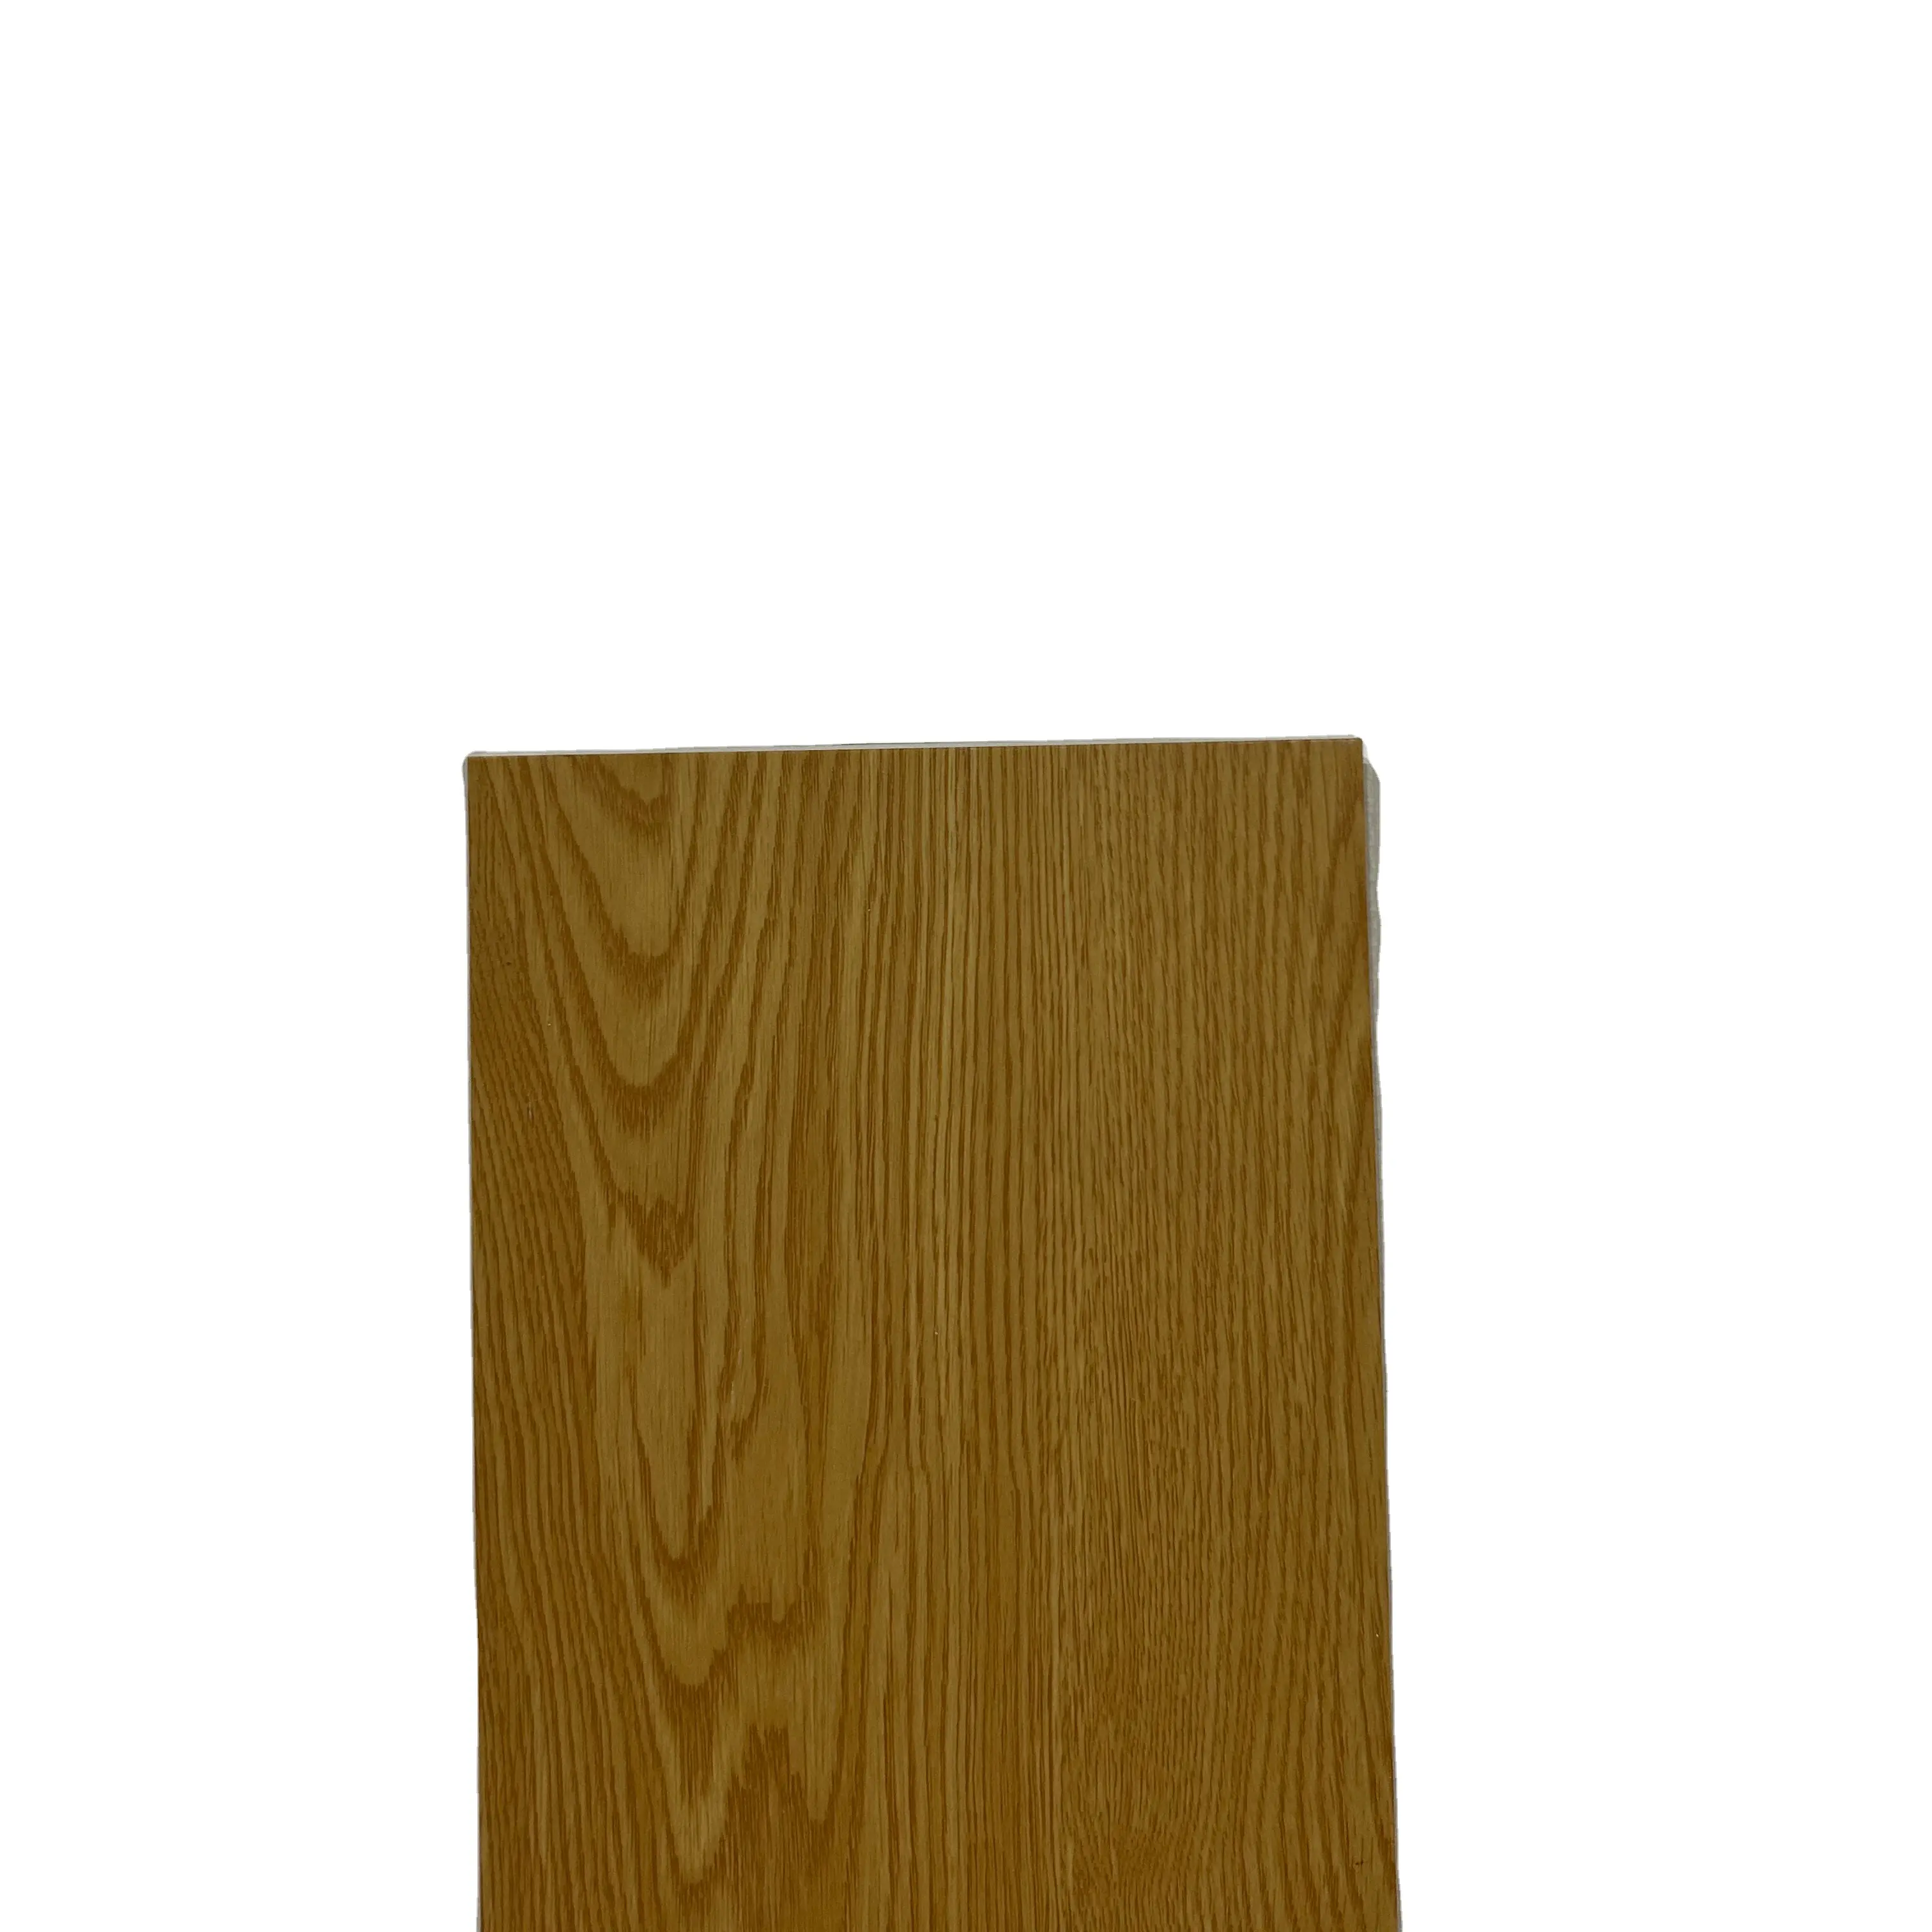 3d деревянная настенная панель LVT, размер напольного покрытия 7*48 дюймов, толщина 5 мм, износостойкий слой 0,5 мм